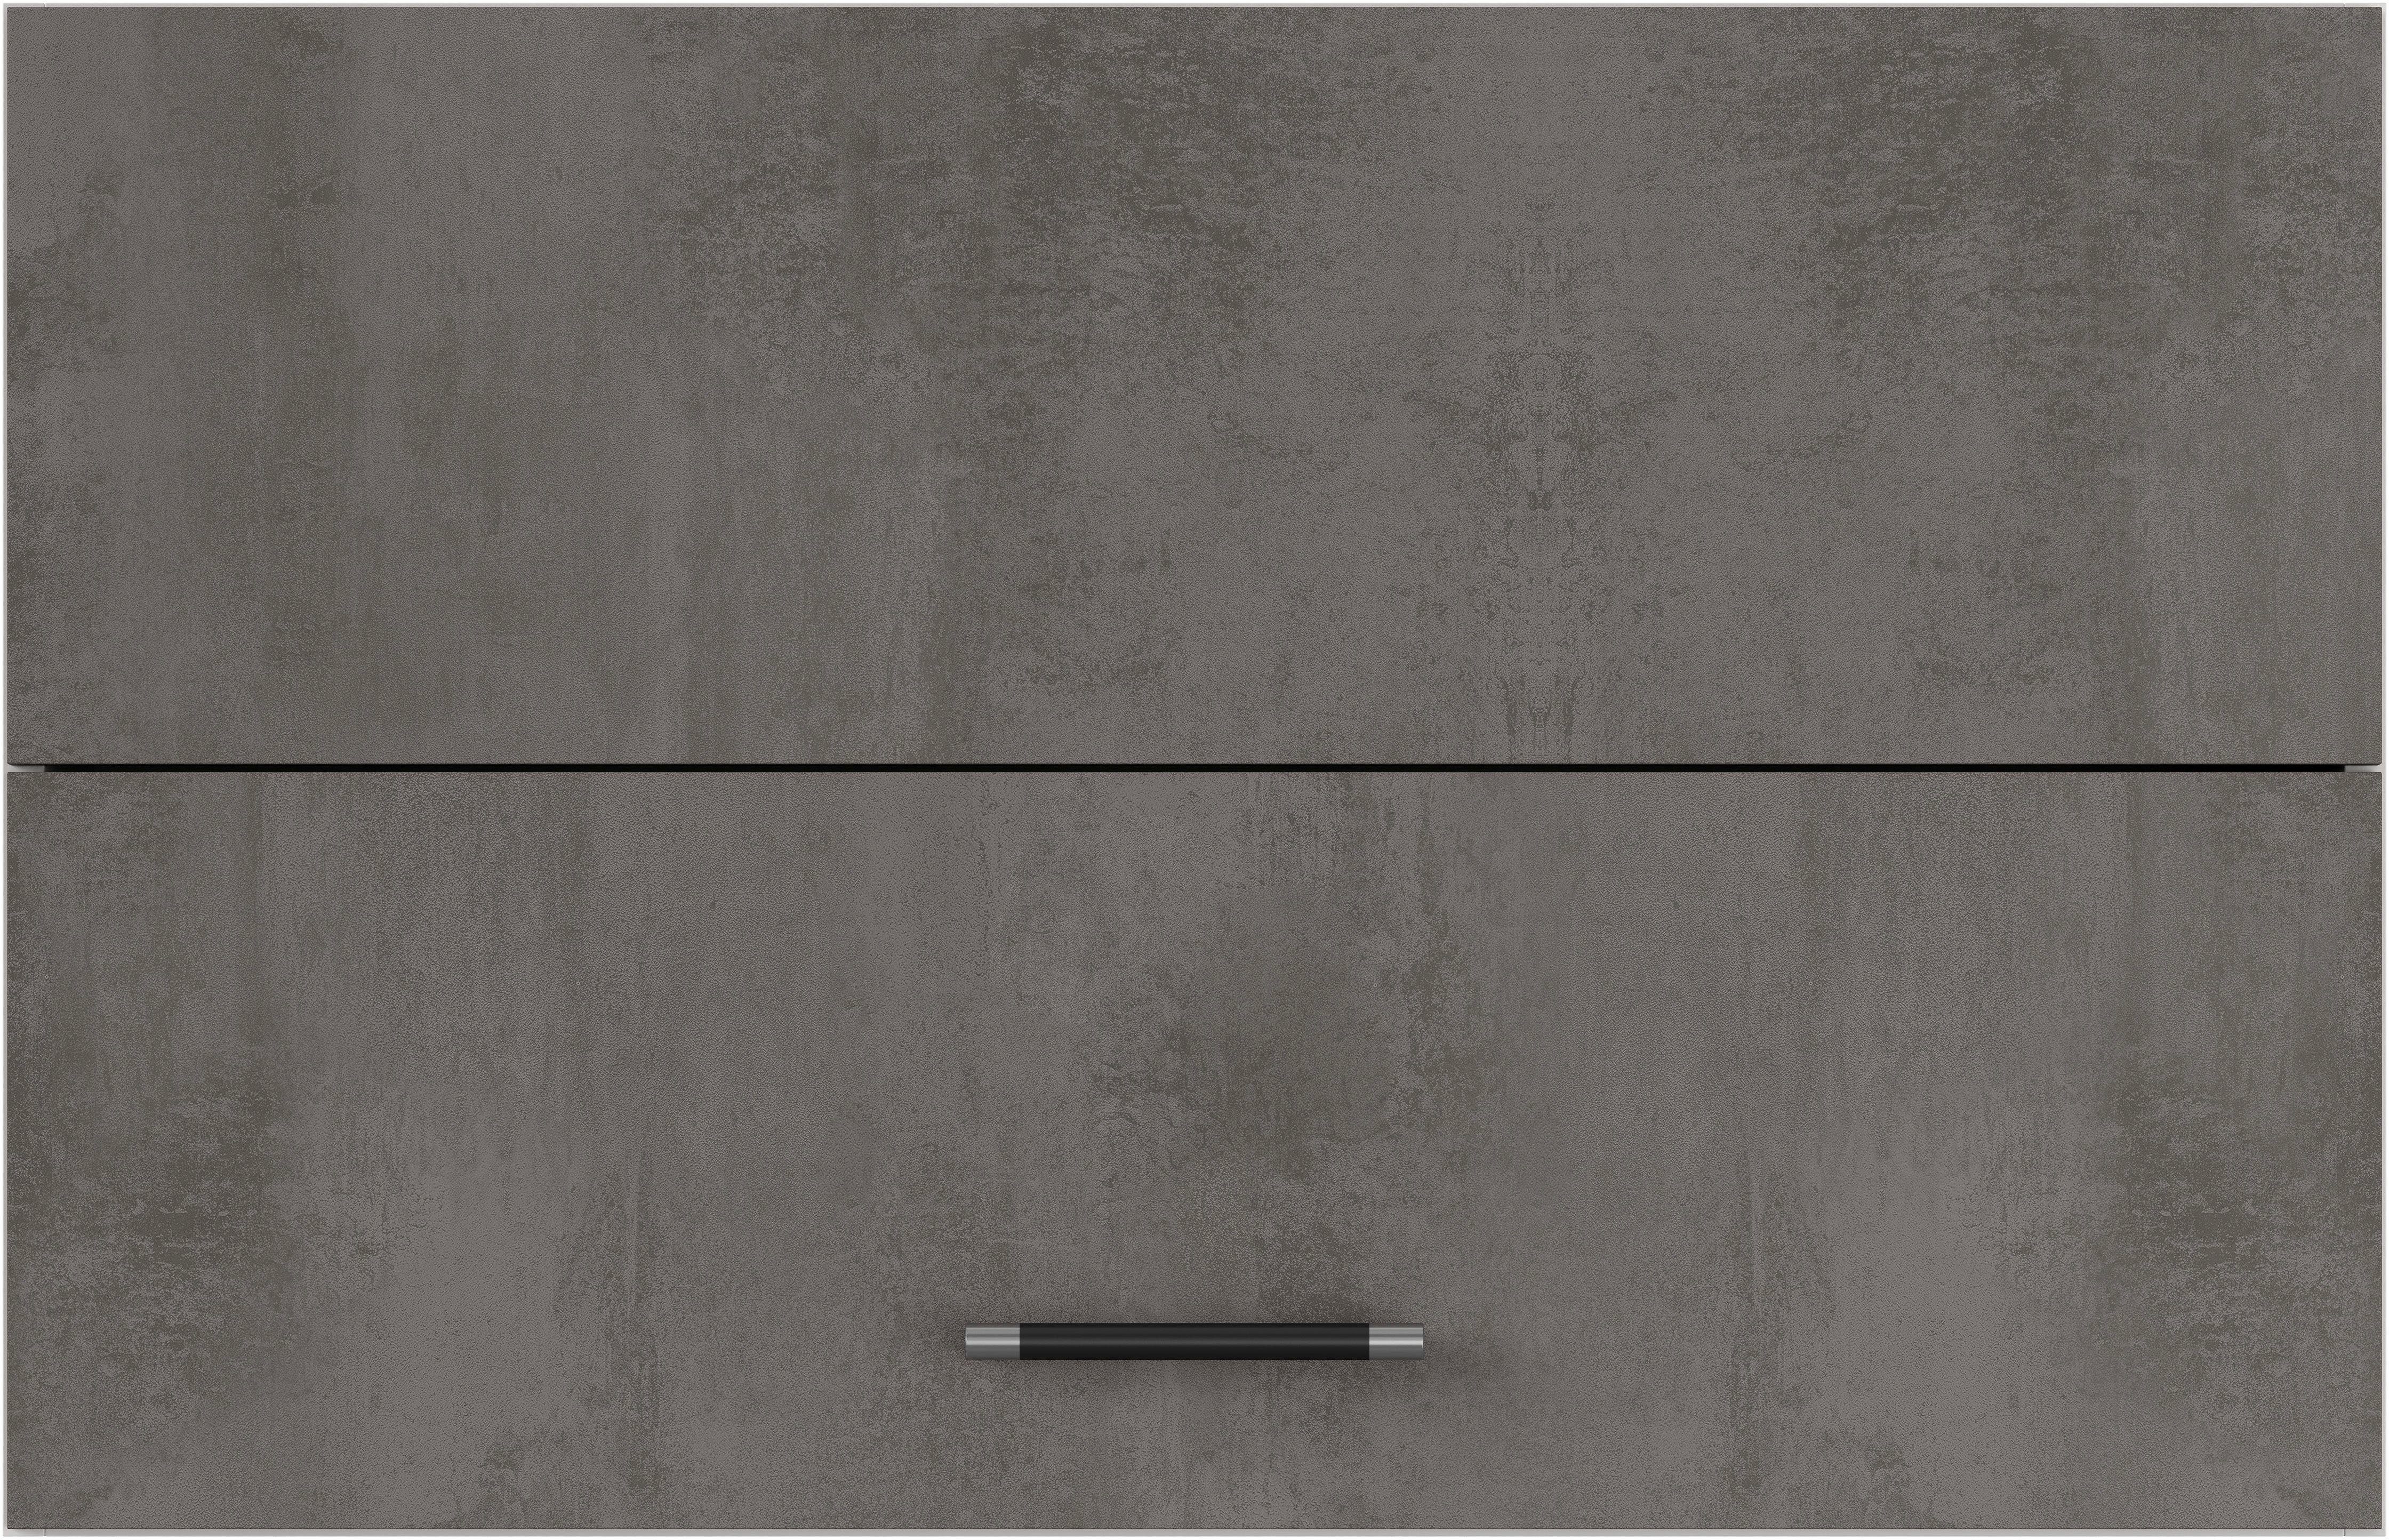 IMPULS KÜCHEN Faltlifthängeschrank mit Falt-Lifttür bestehend aus 2 Fronten Beton-Optik Schiefer dunkelgrau | Space Grey